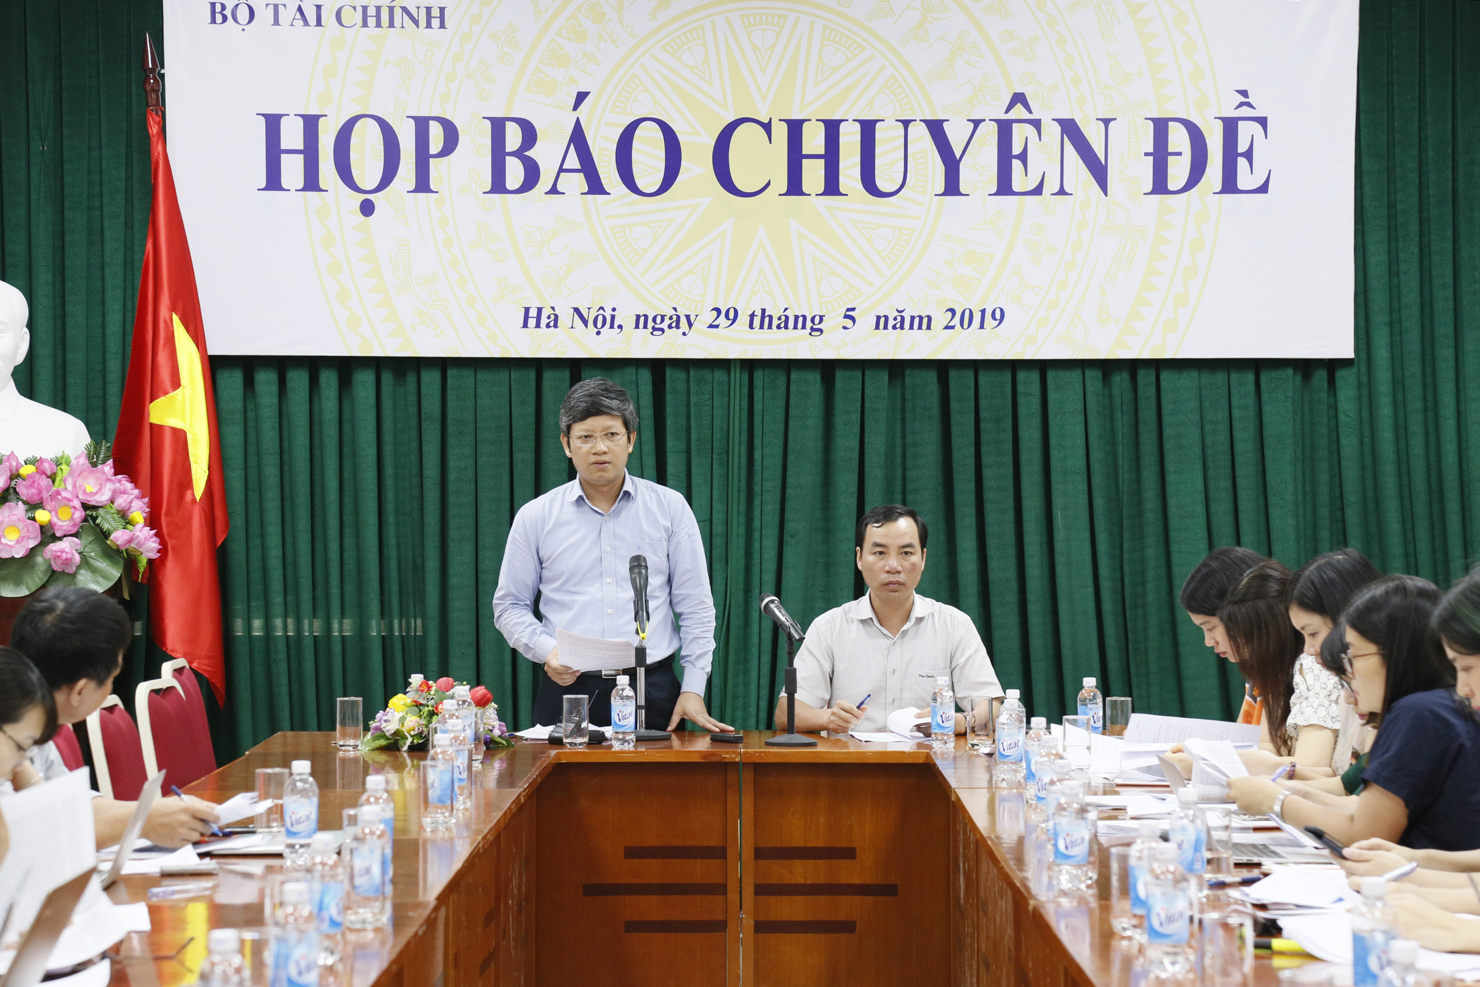 ông Phạm Văn Trường - Vụ trưởng Vụ Hành chính sự nghiệp (Bộ Tài chính) chủ trì buổi họp báo.